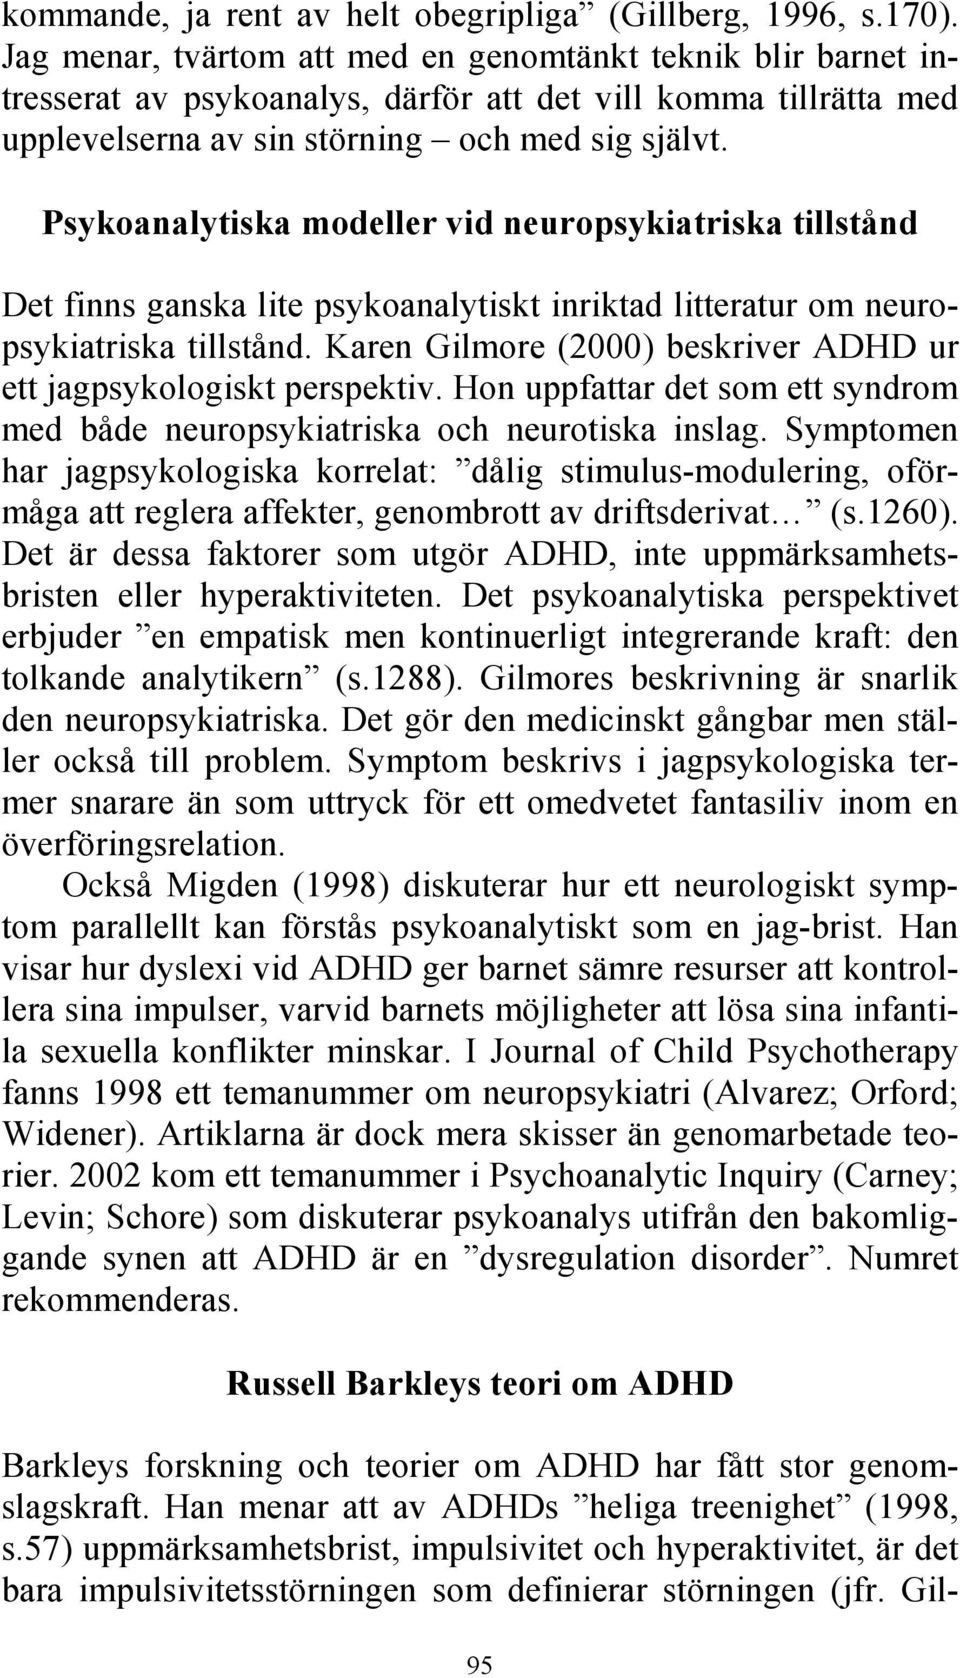 Psykoanalytiska modeller vid neuropsykiatriska tillstånd Det finns ganska lite psykoanalytiskt inriktad litteratur om neuropsykiatriska tillstånd.